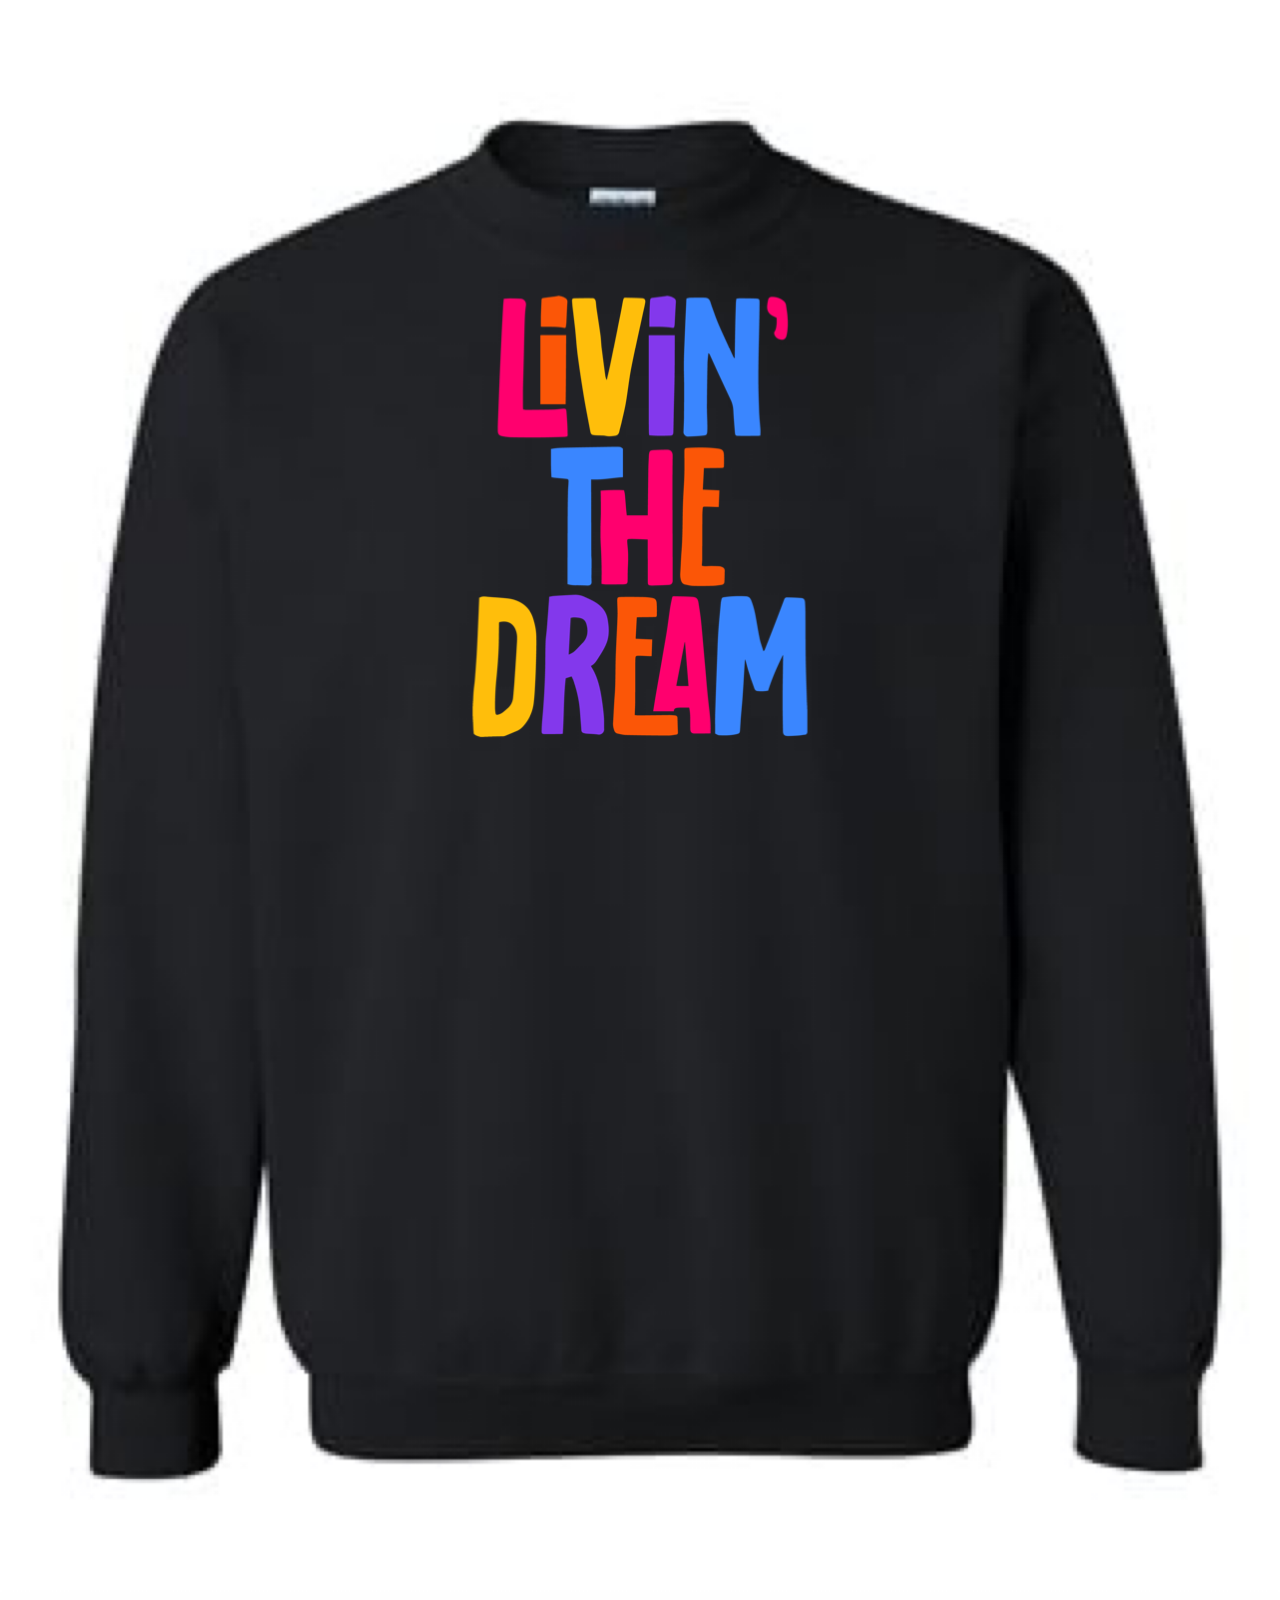 Men’s Livin' The Dream Crewneck Sweatshirt